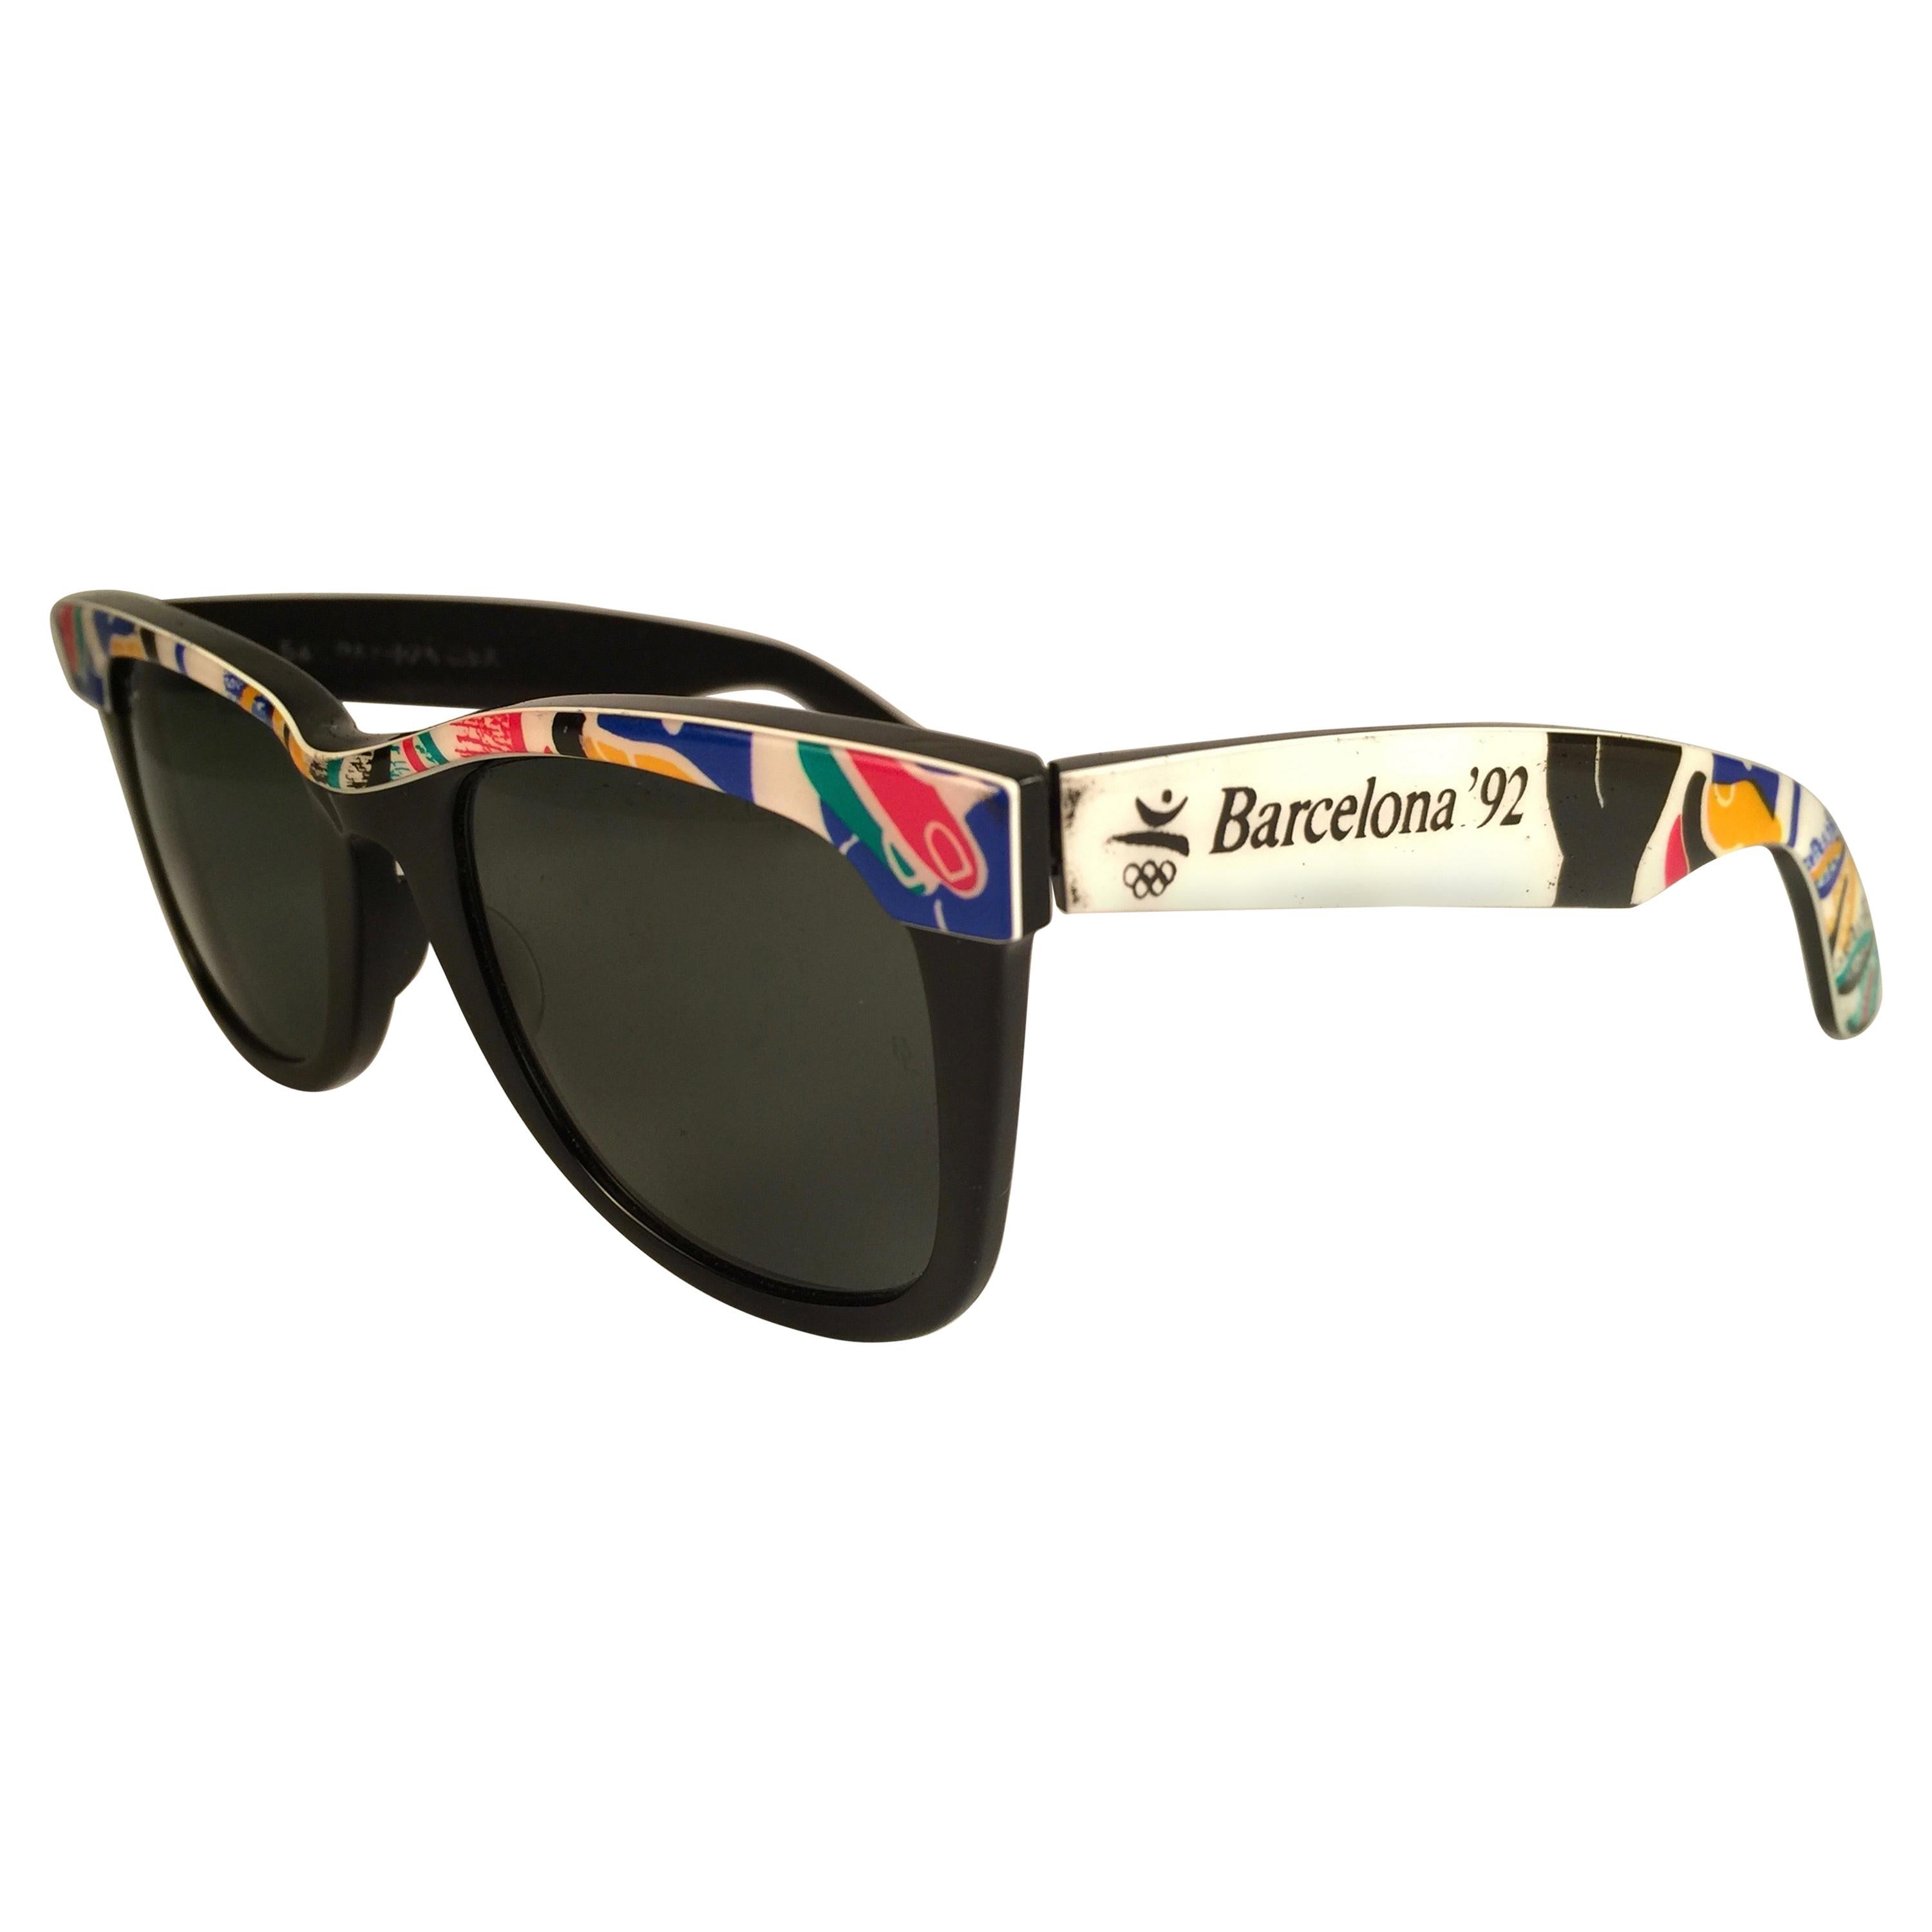 Vintage Ray Ban Sunglasses 1992 - For Sale on 1stDibs | ray ban barcelona  1992, ray ban 1992